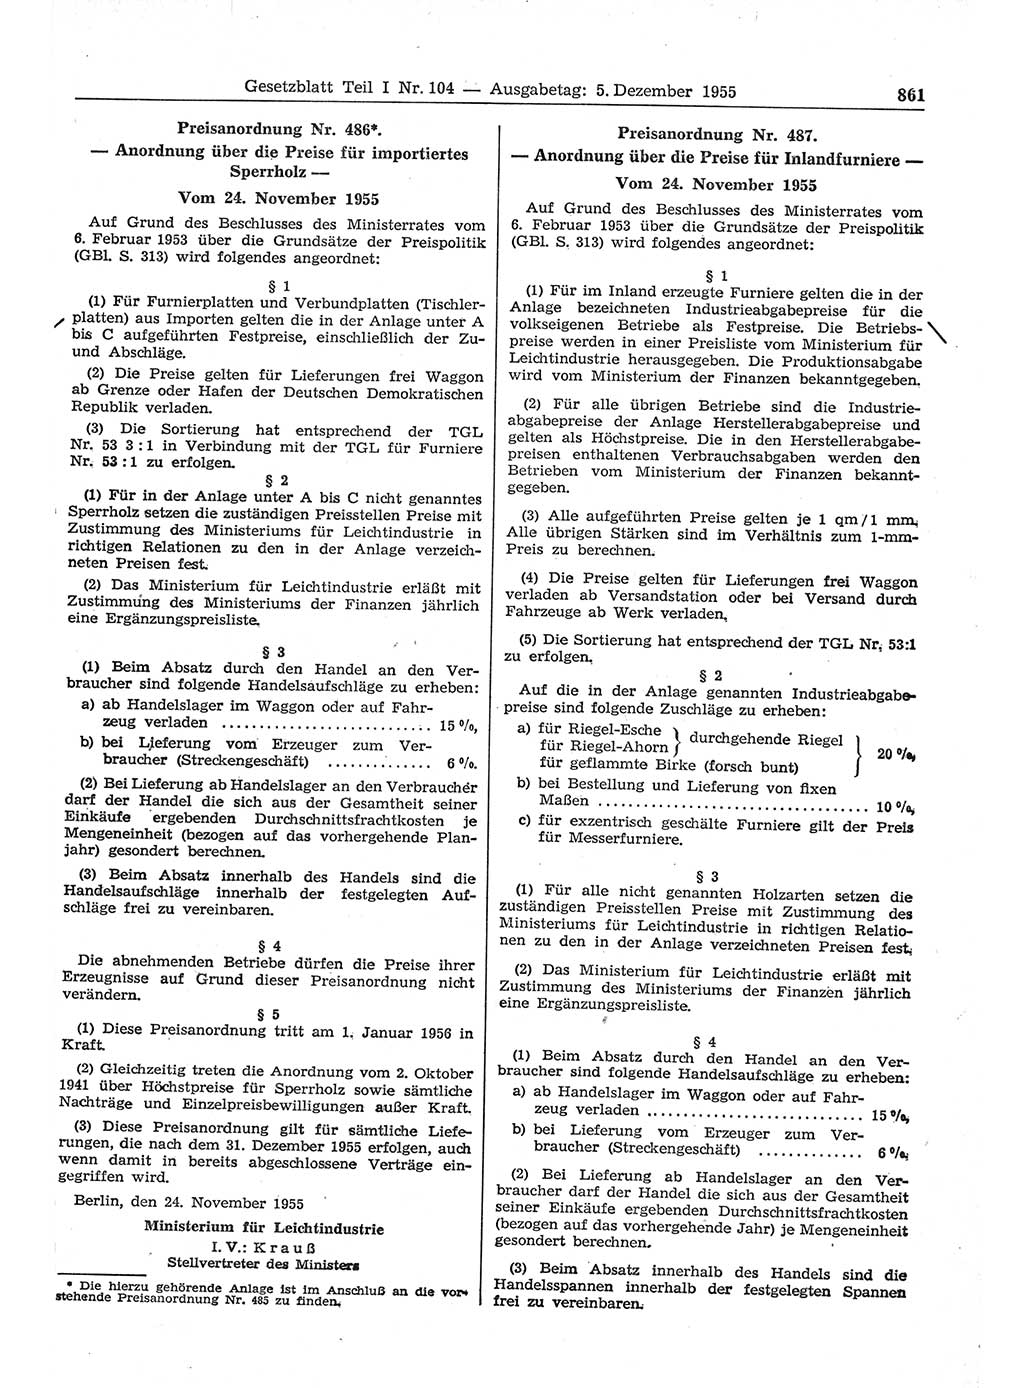 Gesetzblatt (GBl.) der Deutschen Demokratischen Republik (DDR) Teil Ⅰ 1955, Seite 861 (GBl. DDR Ⅰ 1955, S. 861)